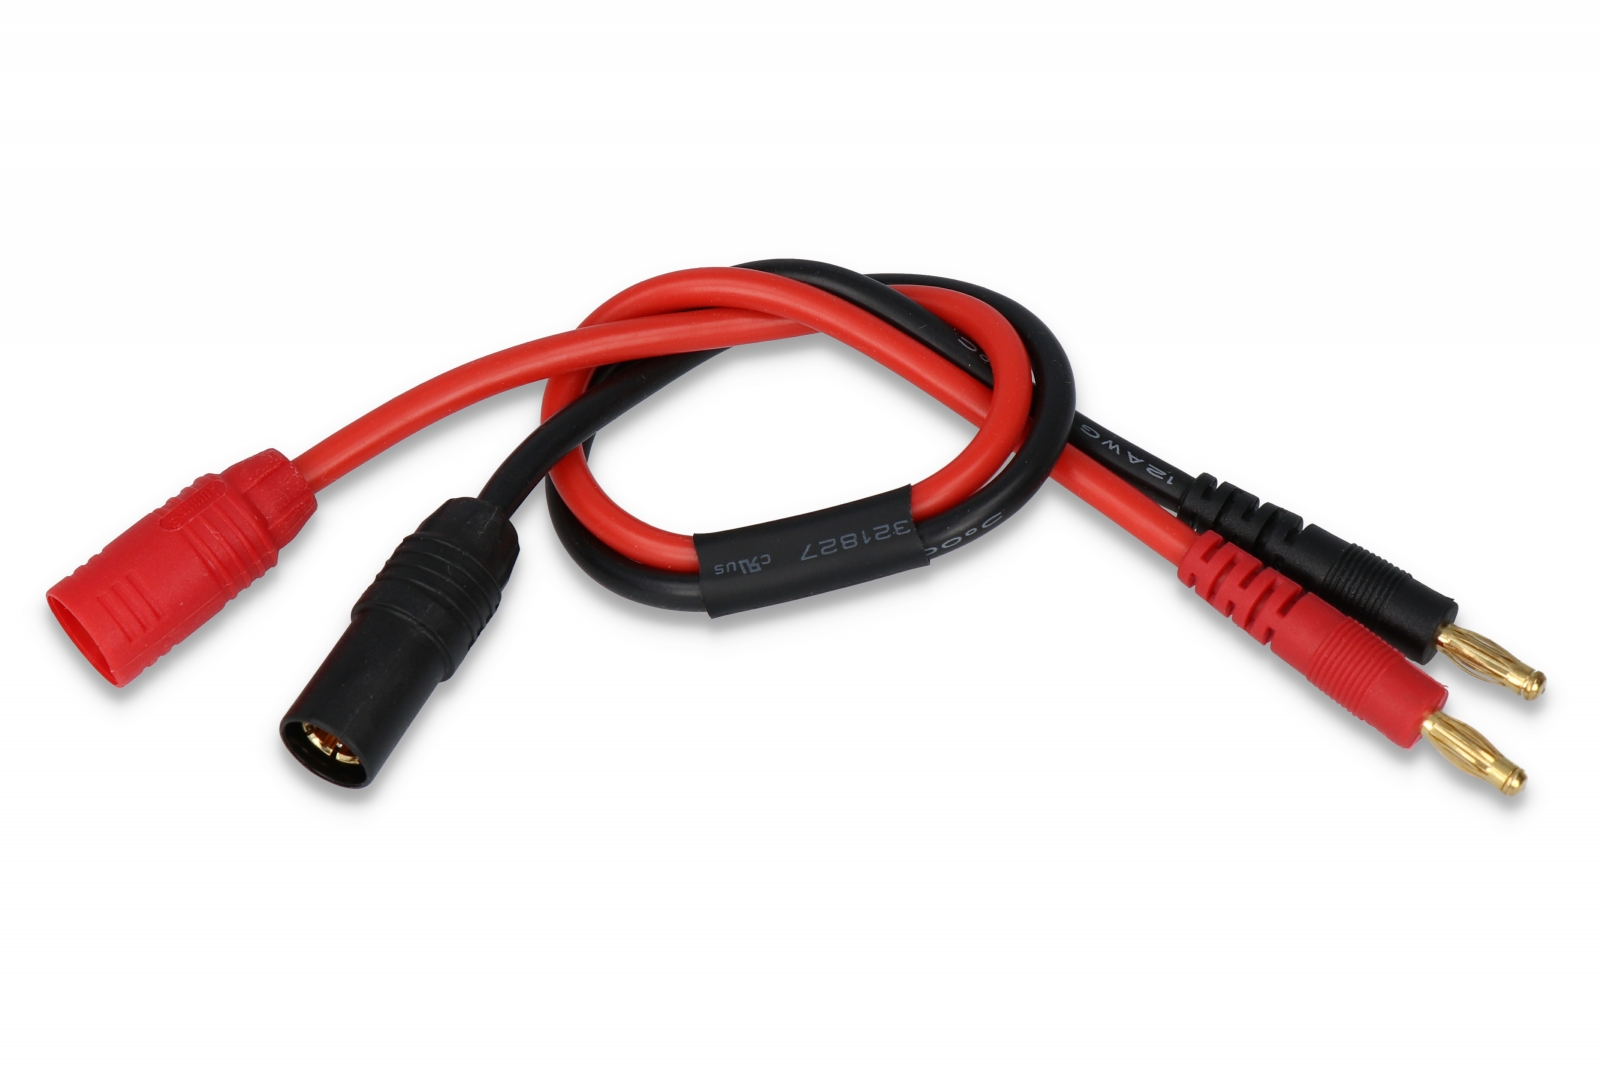 SLS AS150 Ladekabel - Lipo Modellbau Akkus bei Stefansliposhop online kaufen